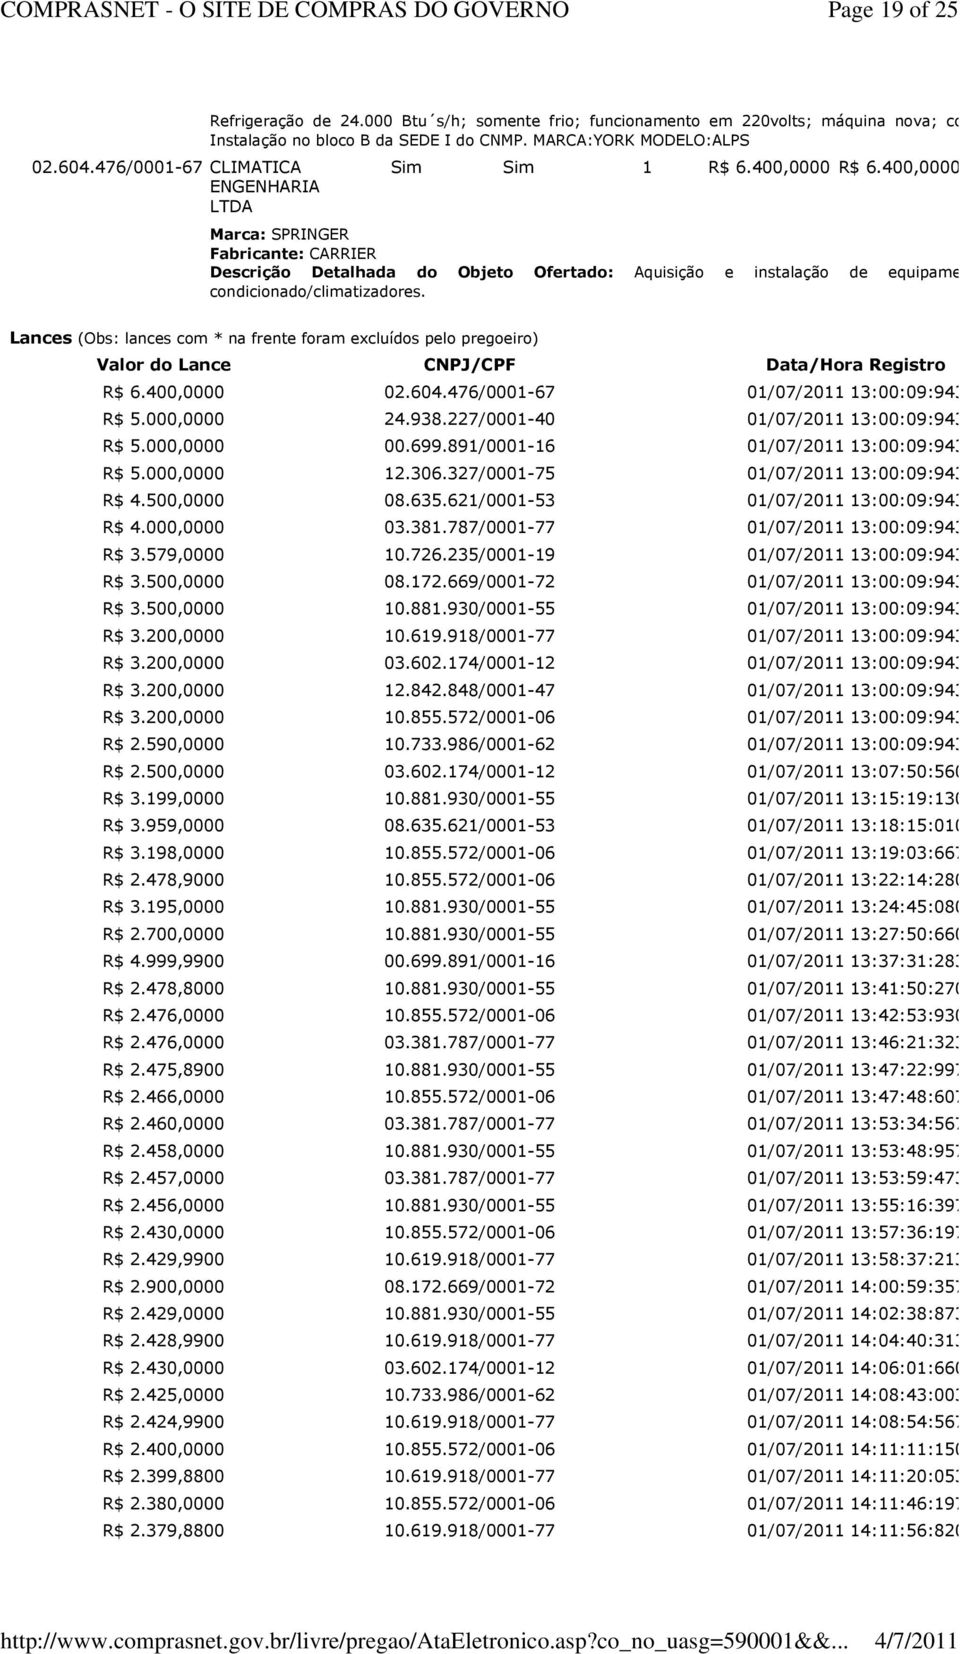 Lances (Obs: lances com * na frente foram excluídos pelo pregoeiro) Valor do Lance CNPJ/CPF Data/Hora Registro R$ 6.400,0000 02.604.476/0001-67 13:00:09:943 R$ 5.000,0000 24.938.